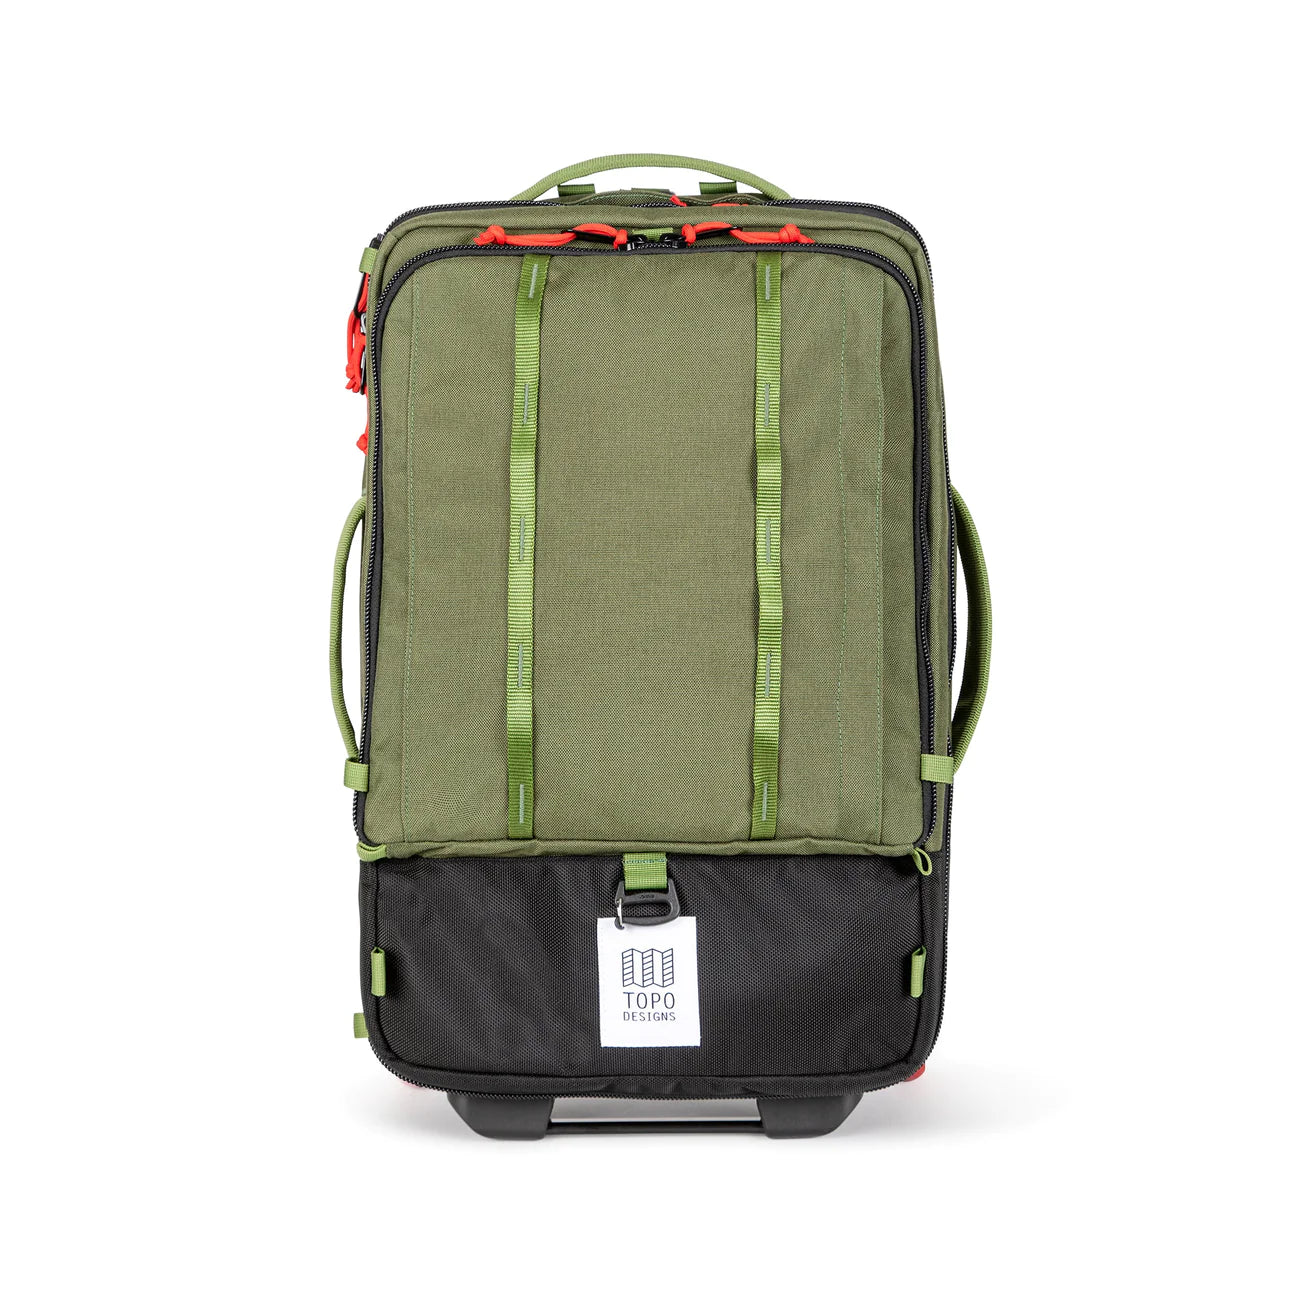 Valise Carry-On Global 44L||Global Travel - Bag Roller 44L